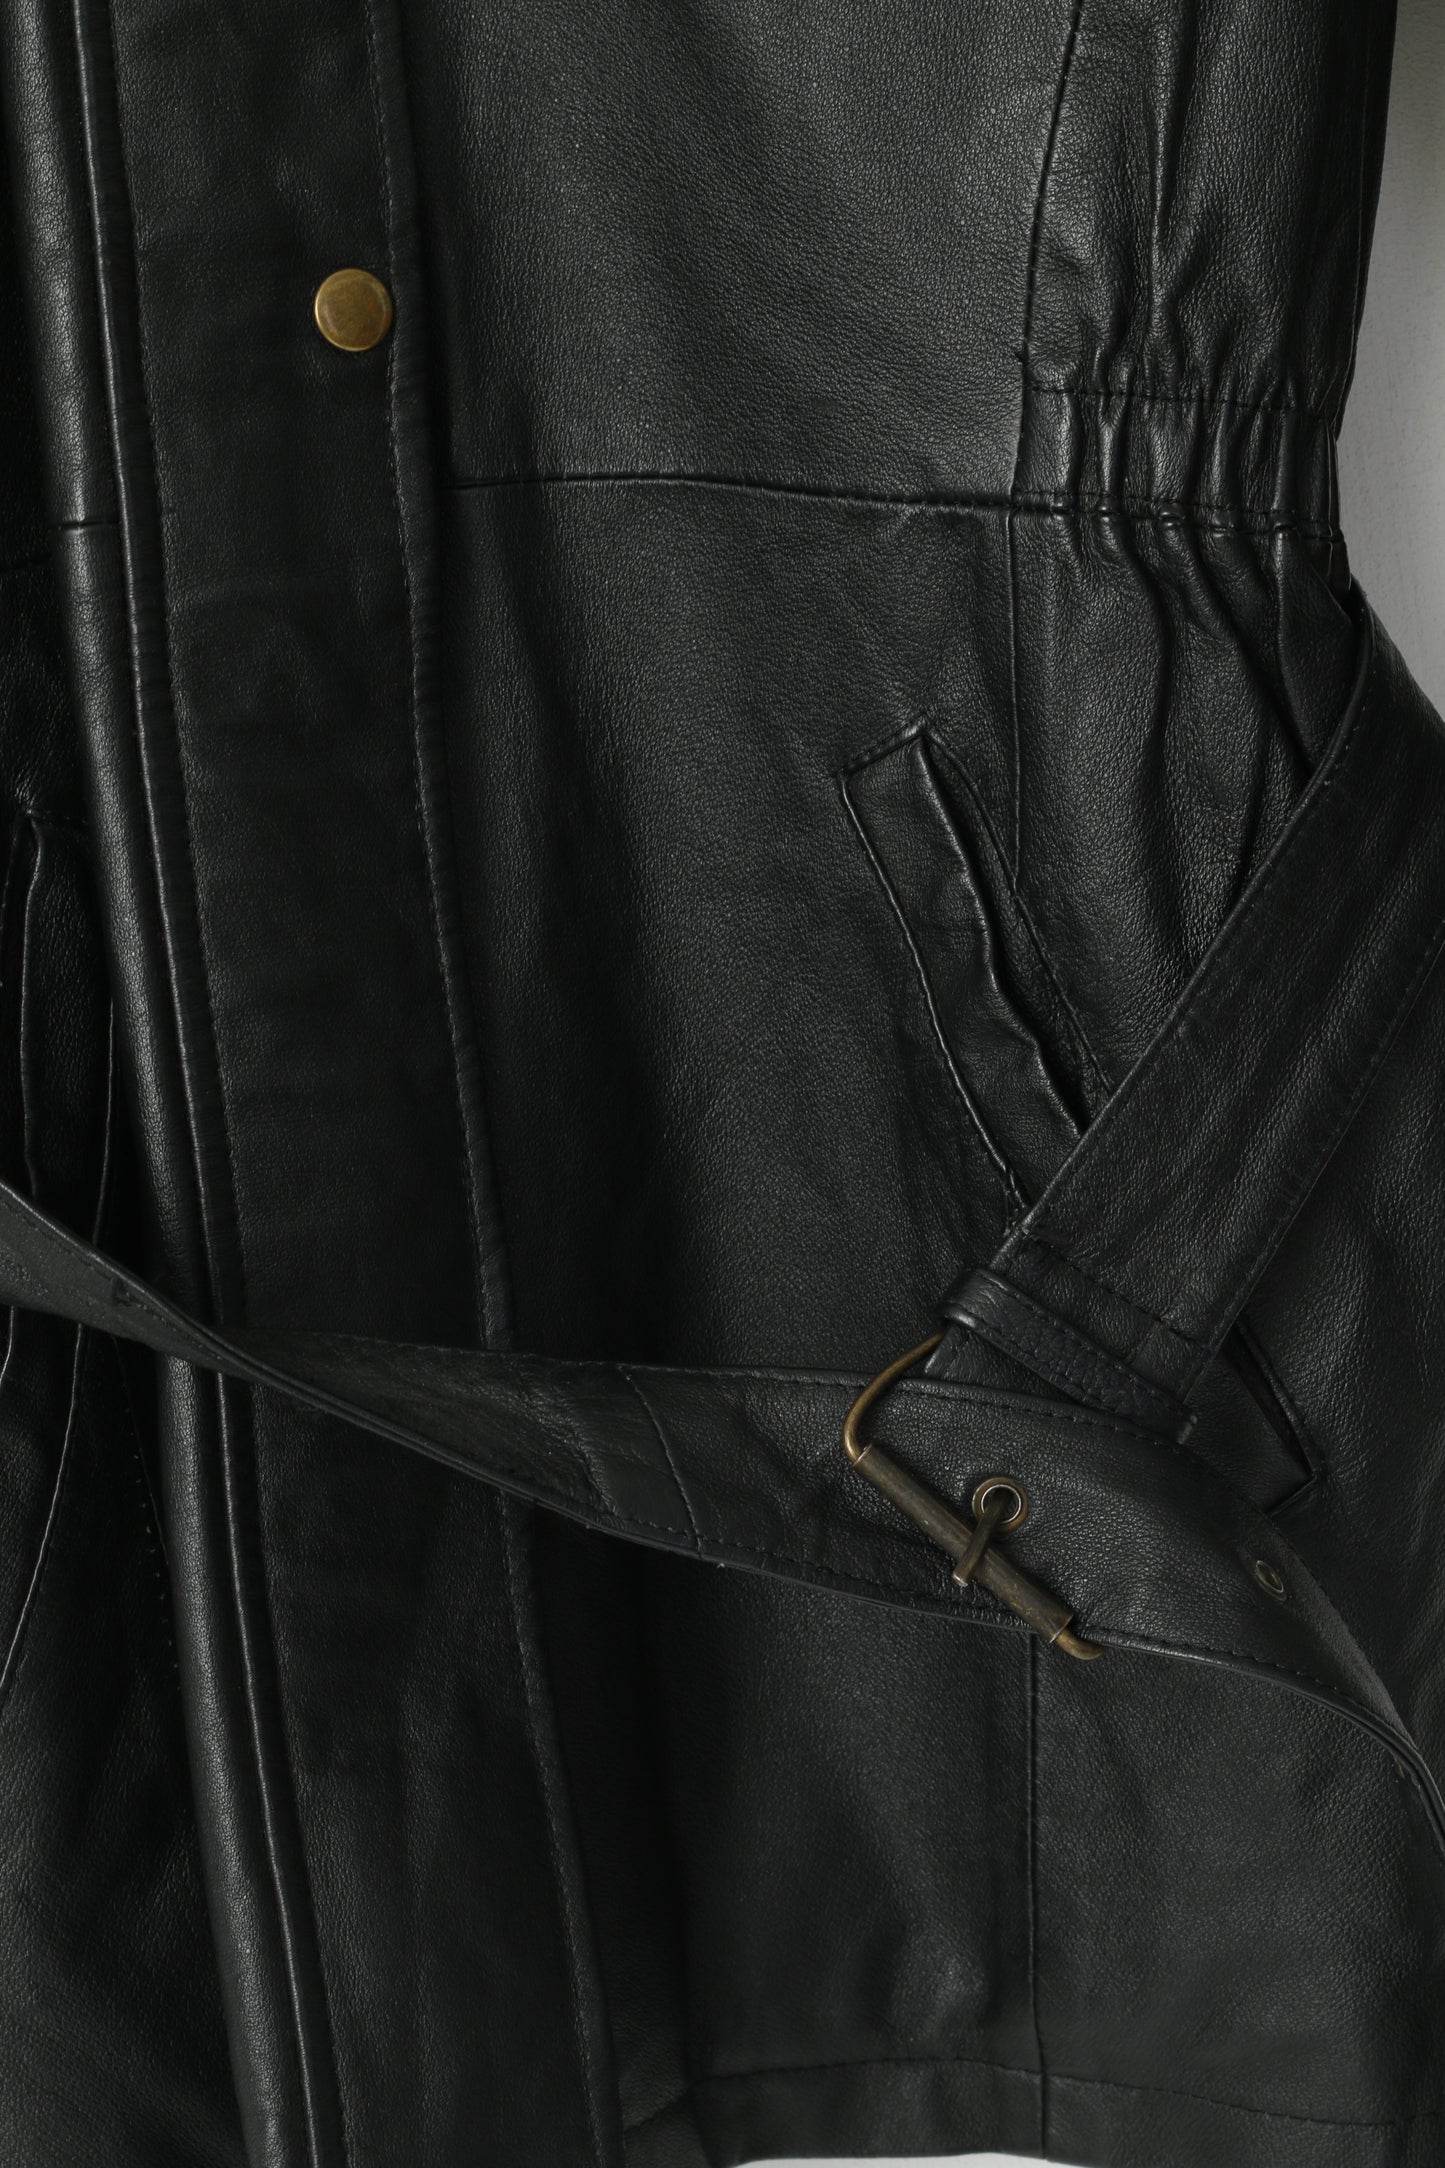 Landy Women M Jacket Black Leather Vintage Belted Biker Removable Trim Collar Top